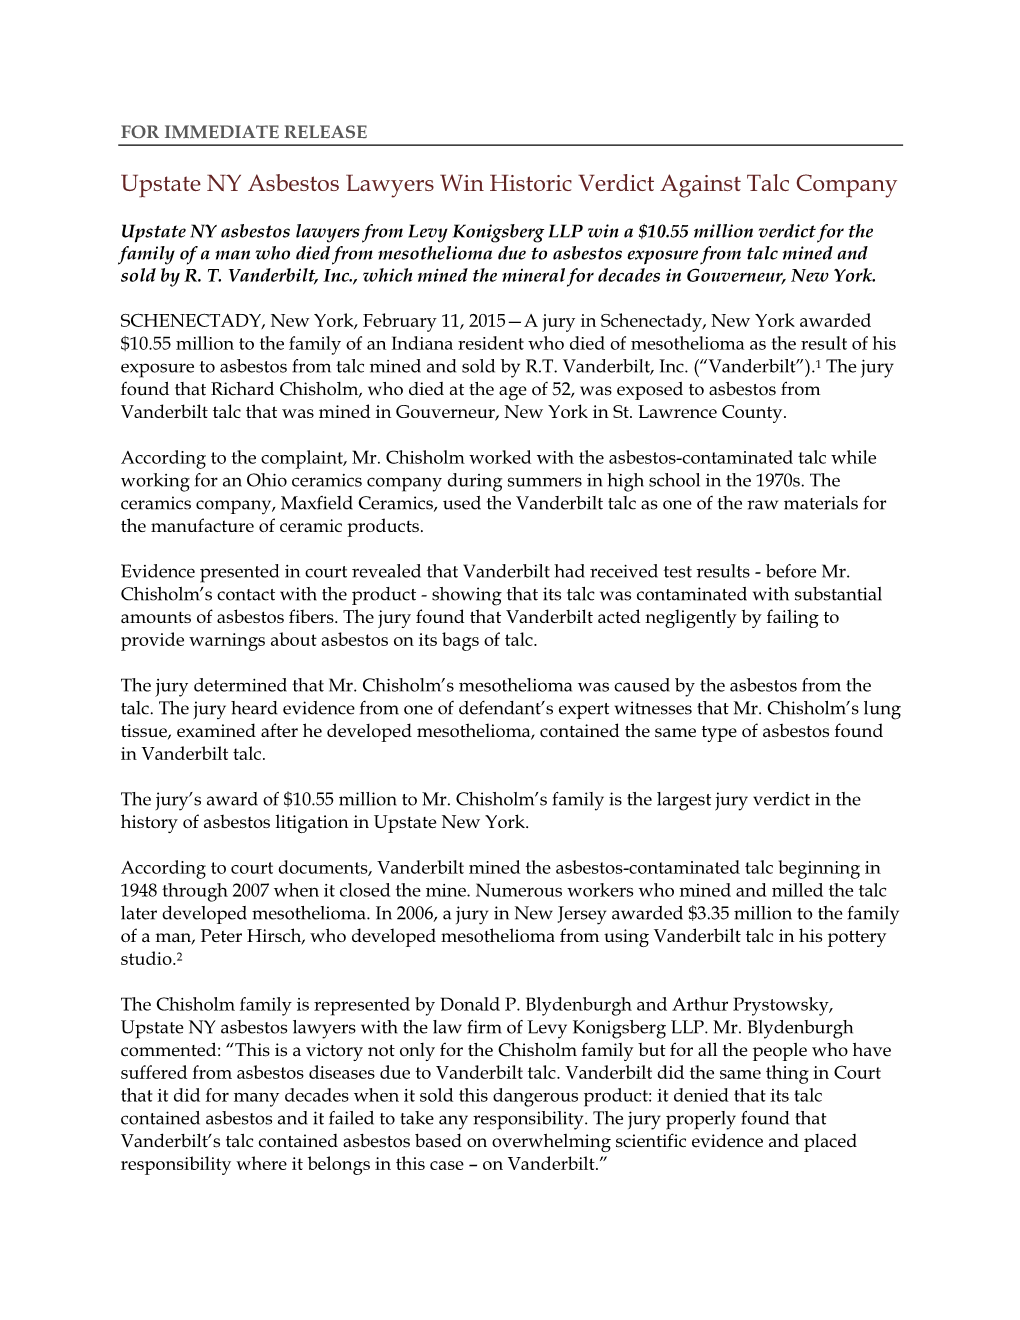 Upstate NY Asbestos Lawyers Win Historic Verdict Against Talc Company